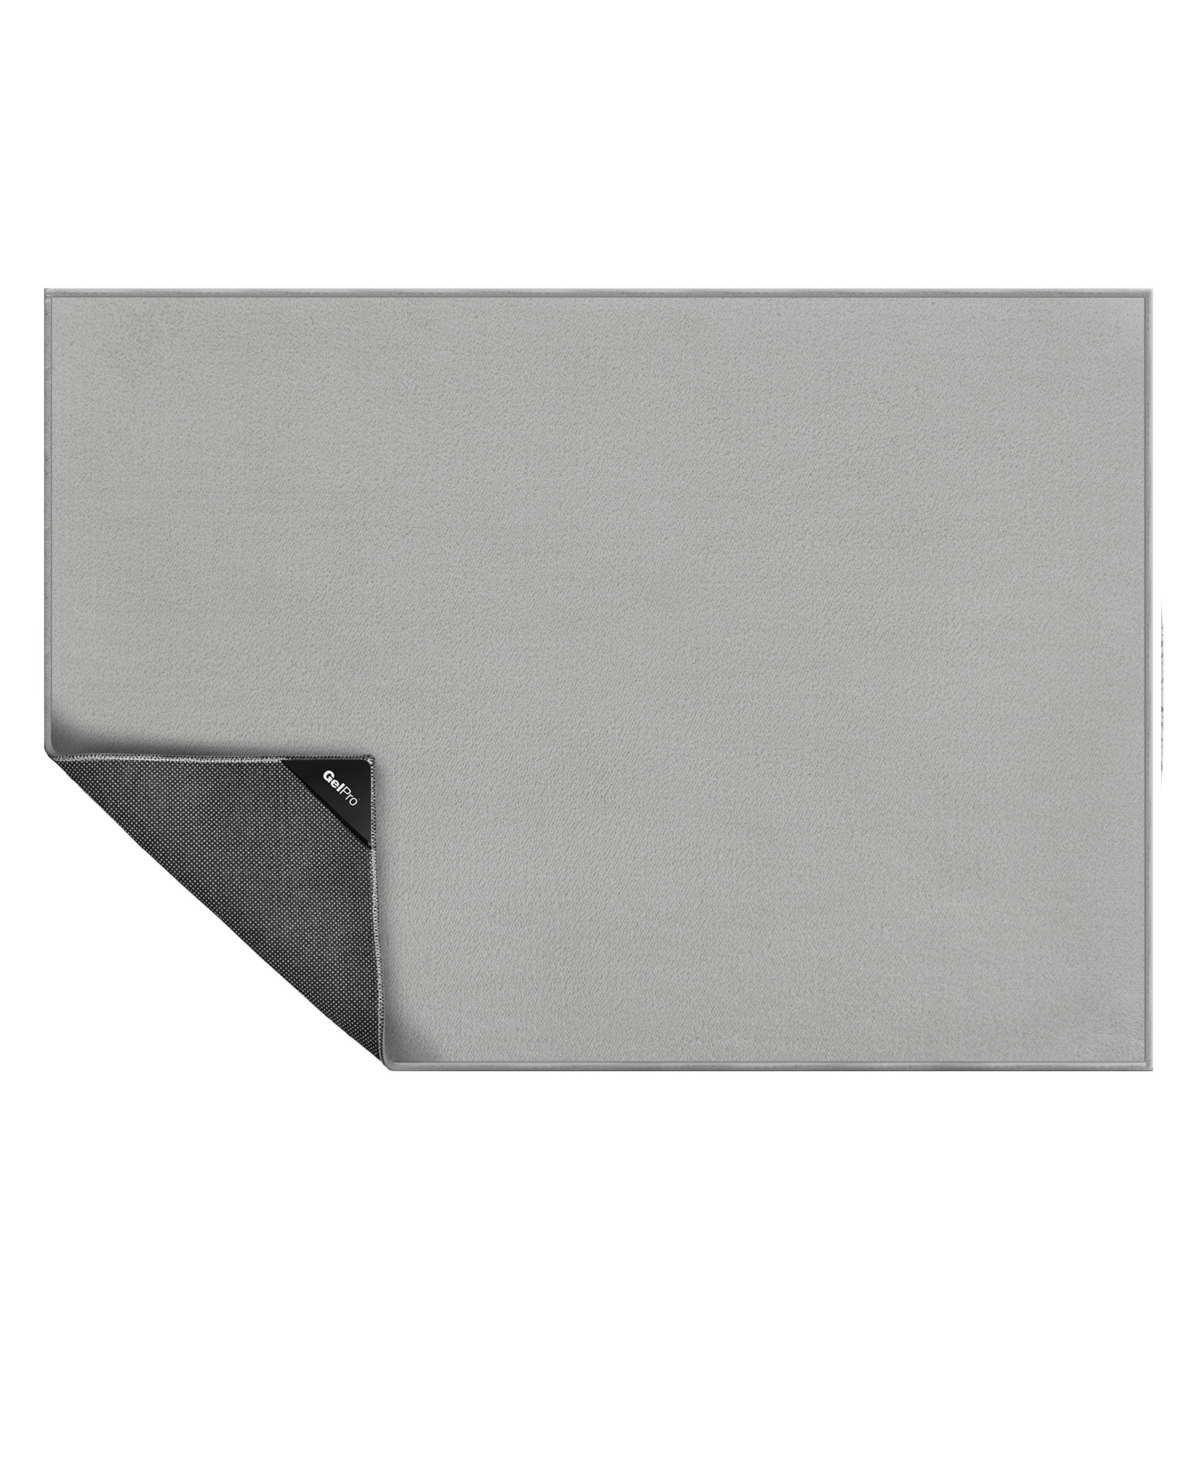 Nevermove Plush Accent Rug, 24" x 34" - Gray